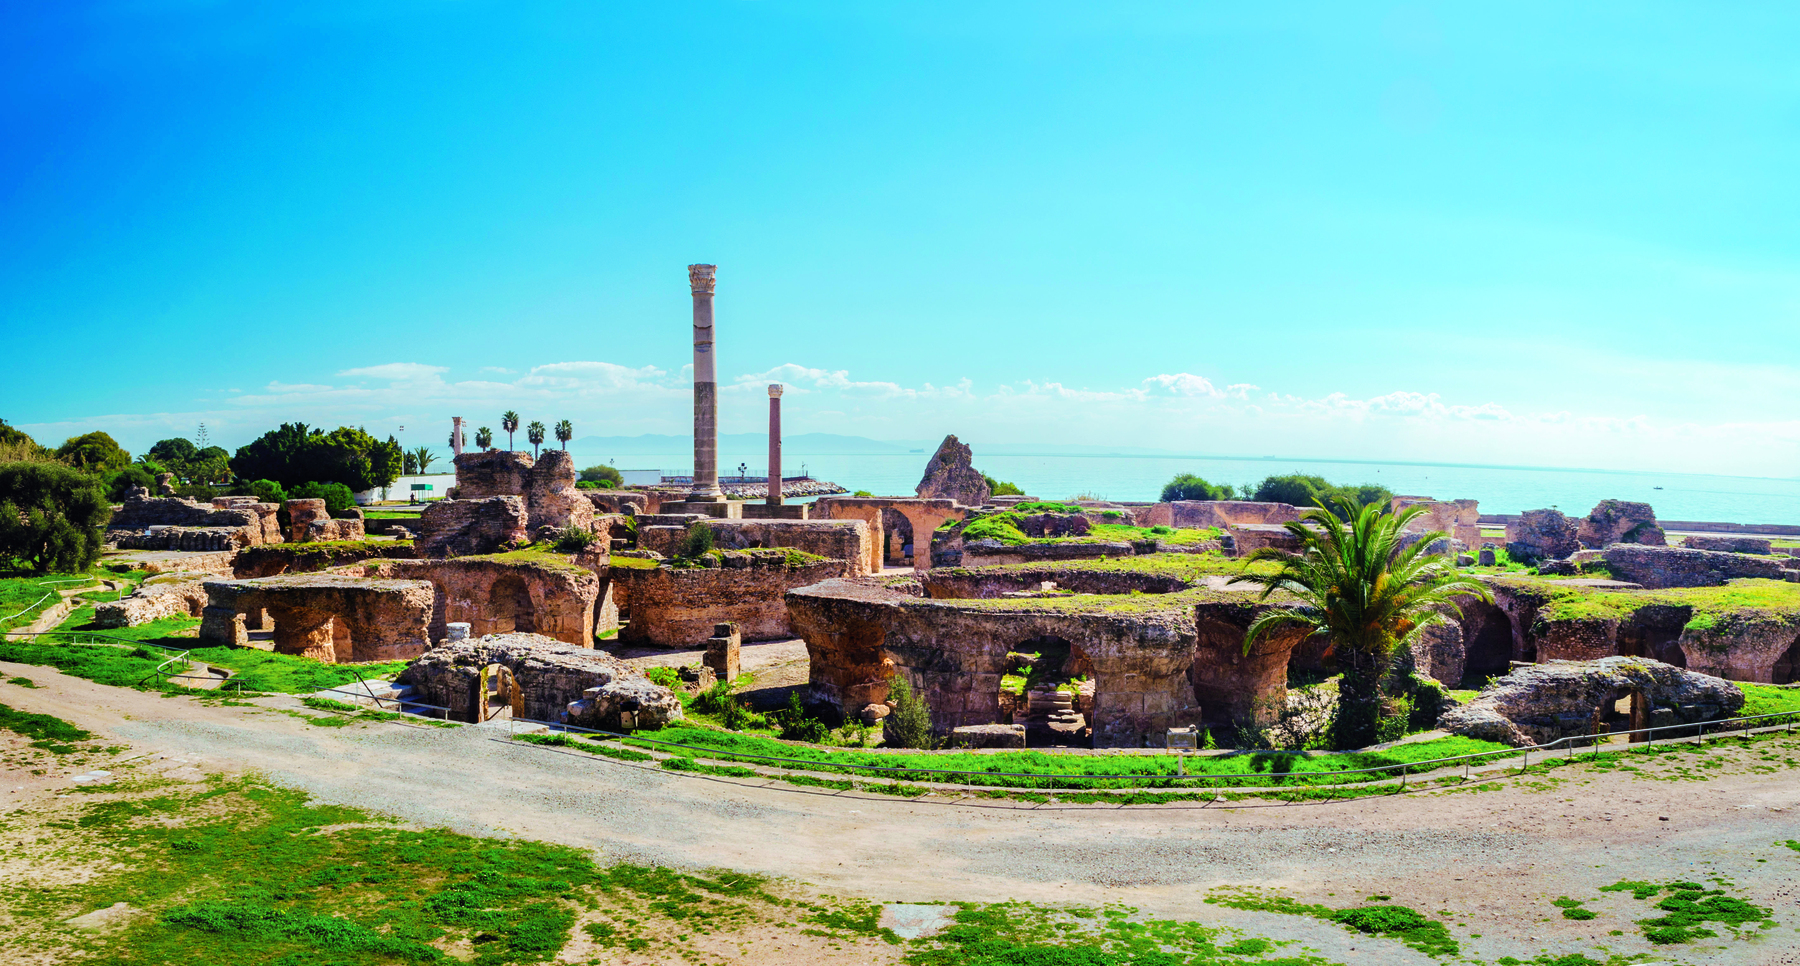 Fotografia. Vista de ruínas de uma cidade à beira mar, com construções em formato circular, corredores e duas colunas verticais ao fundo.